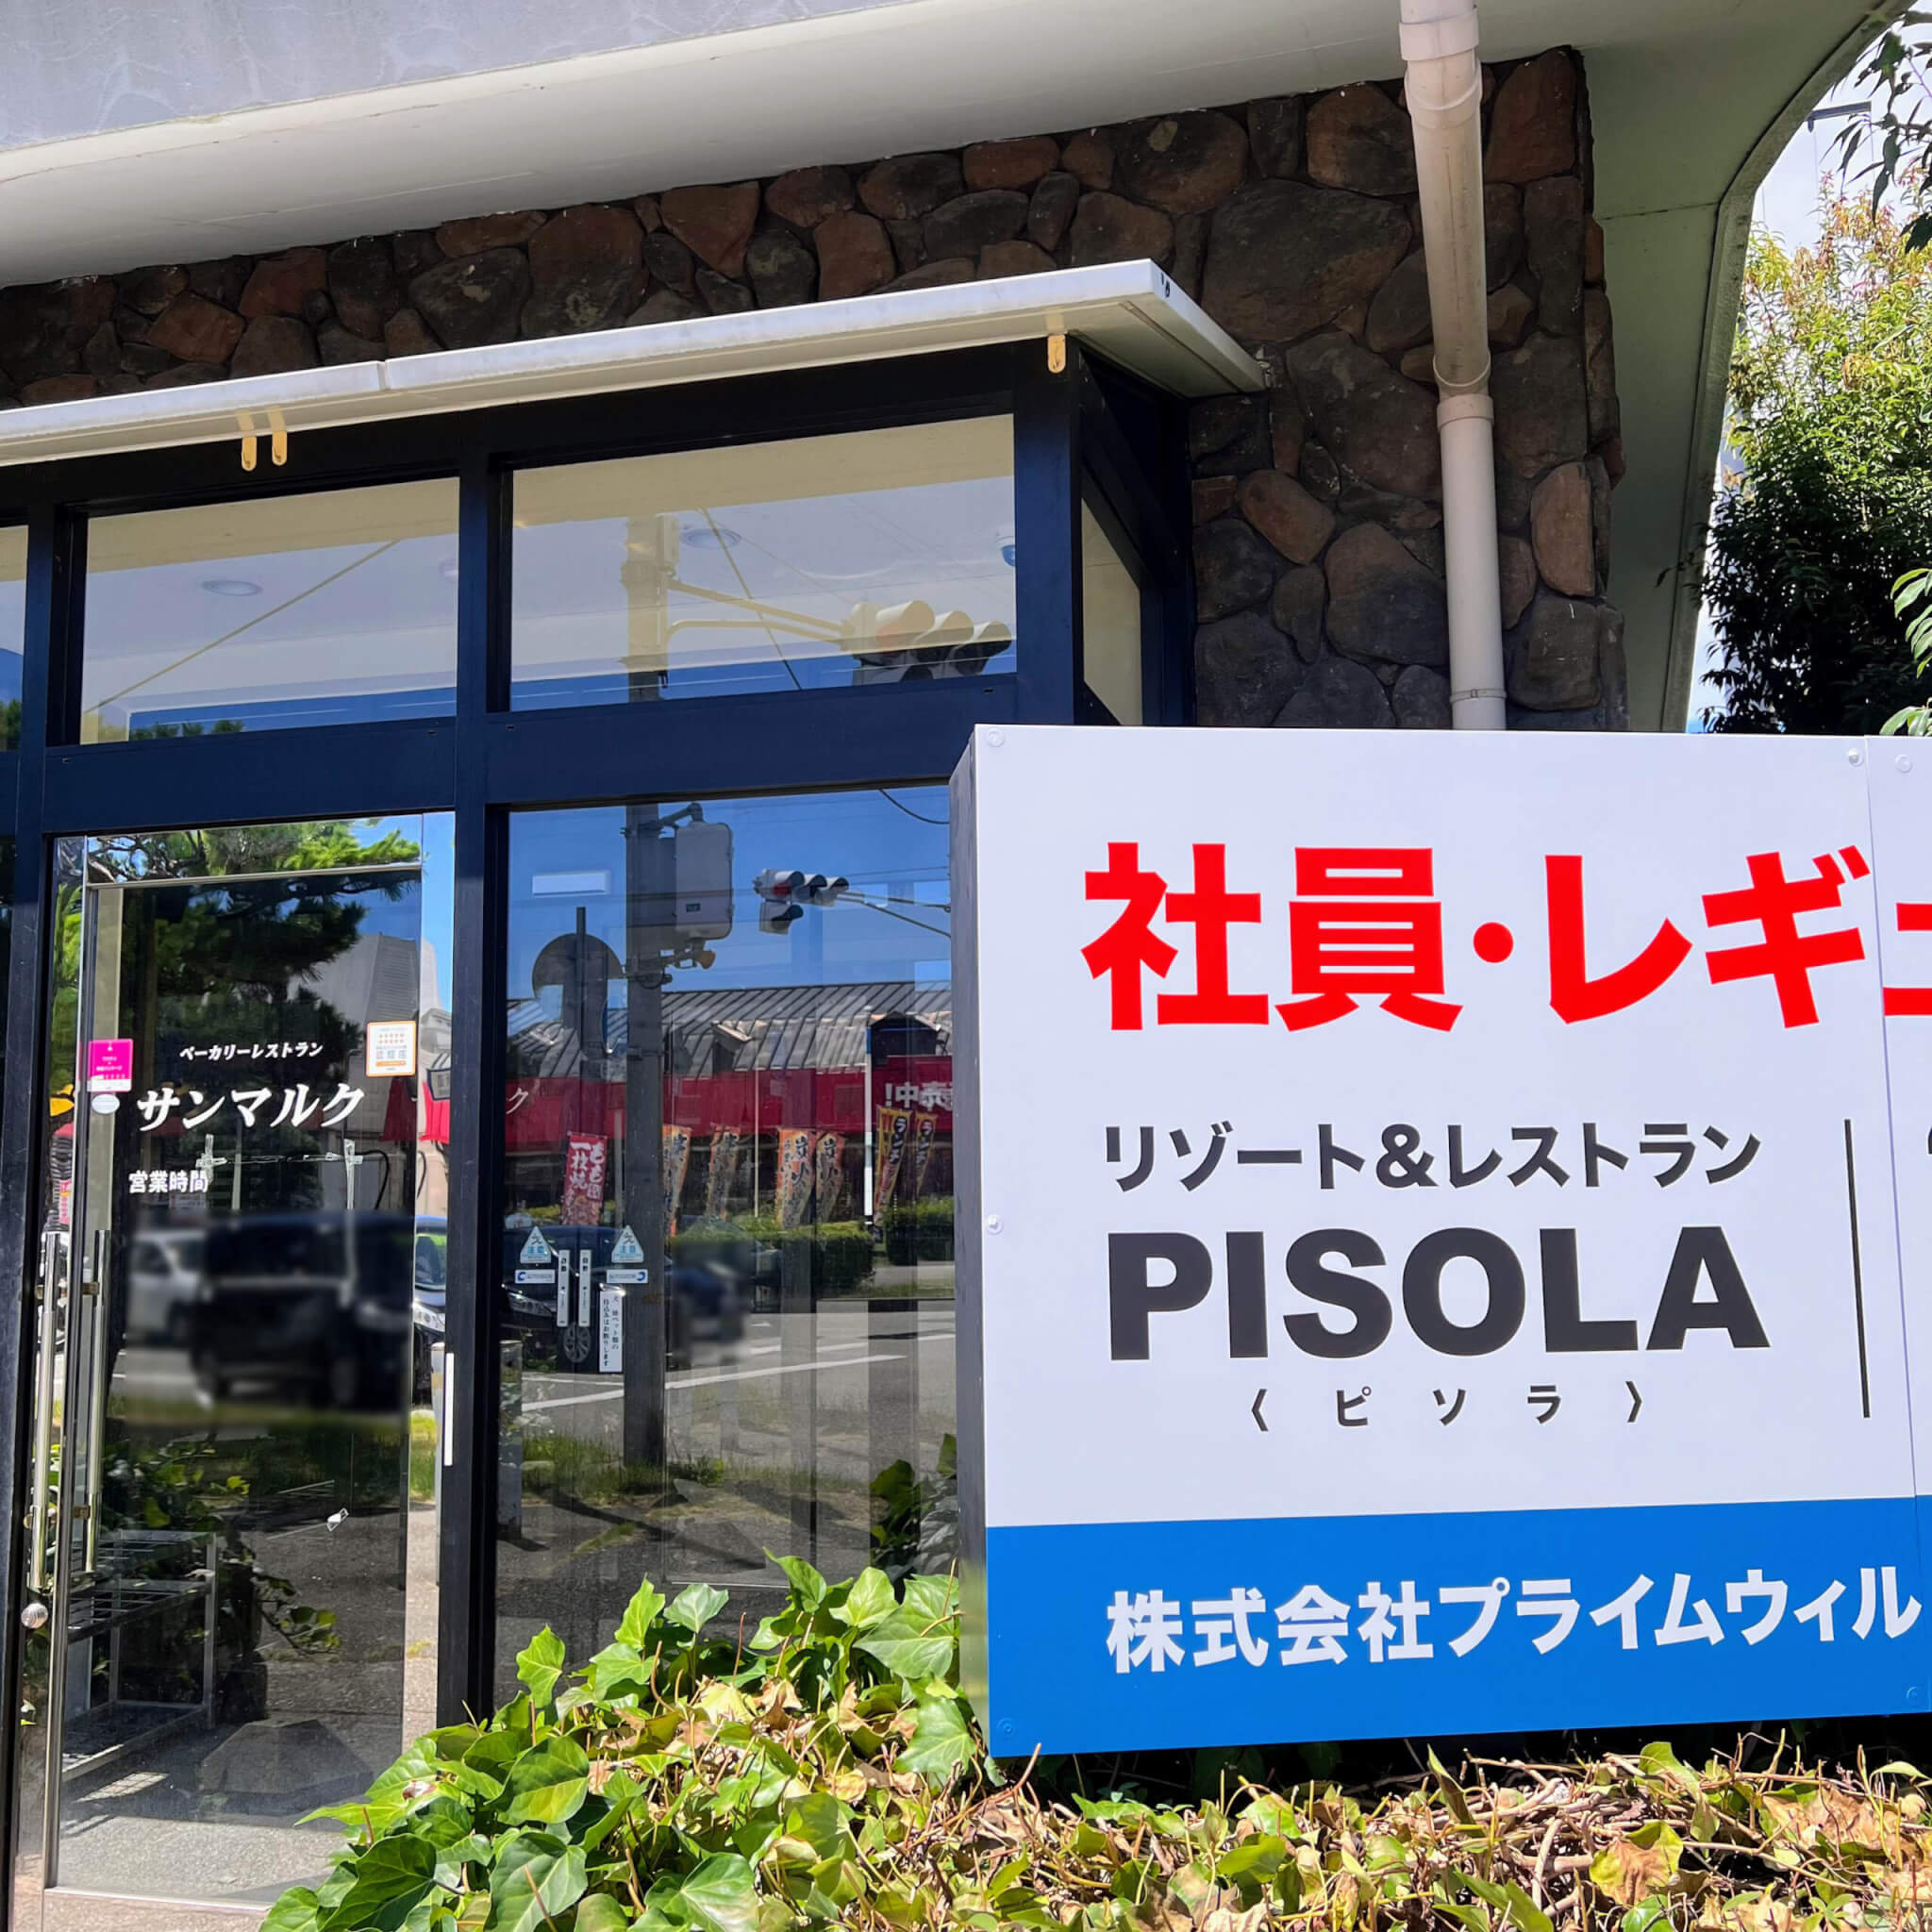 リゾート＆レストランPISOLA（ピソラ）ができる予定のサンマルク加古川店跡地